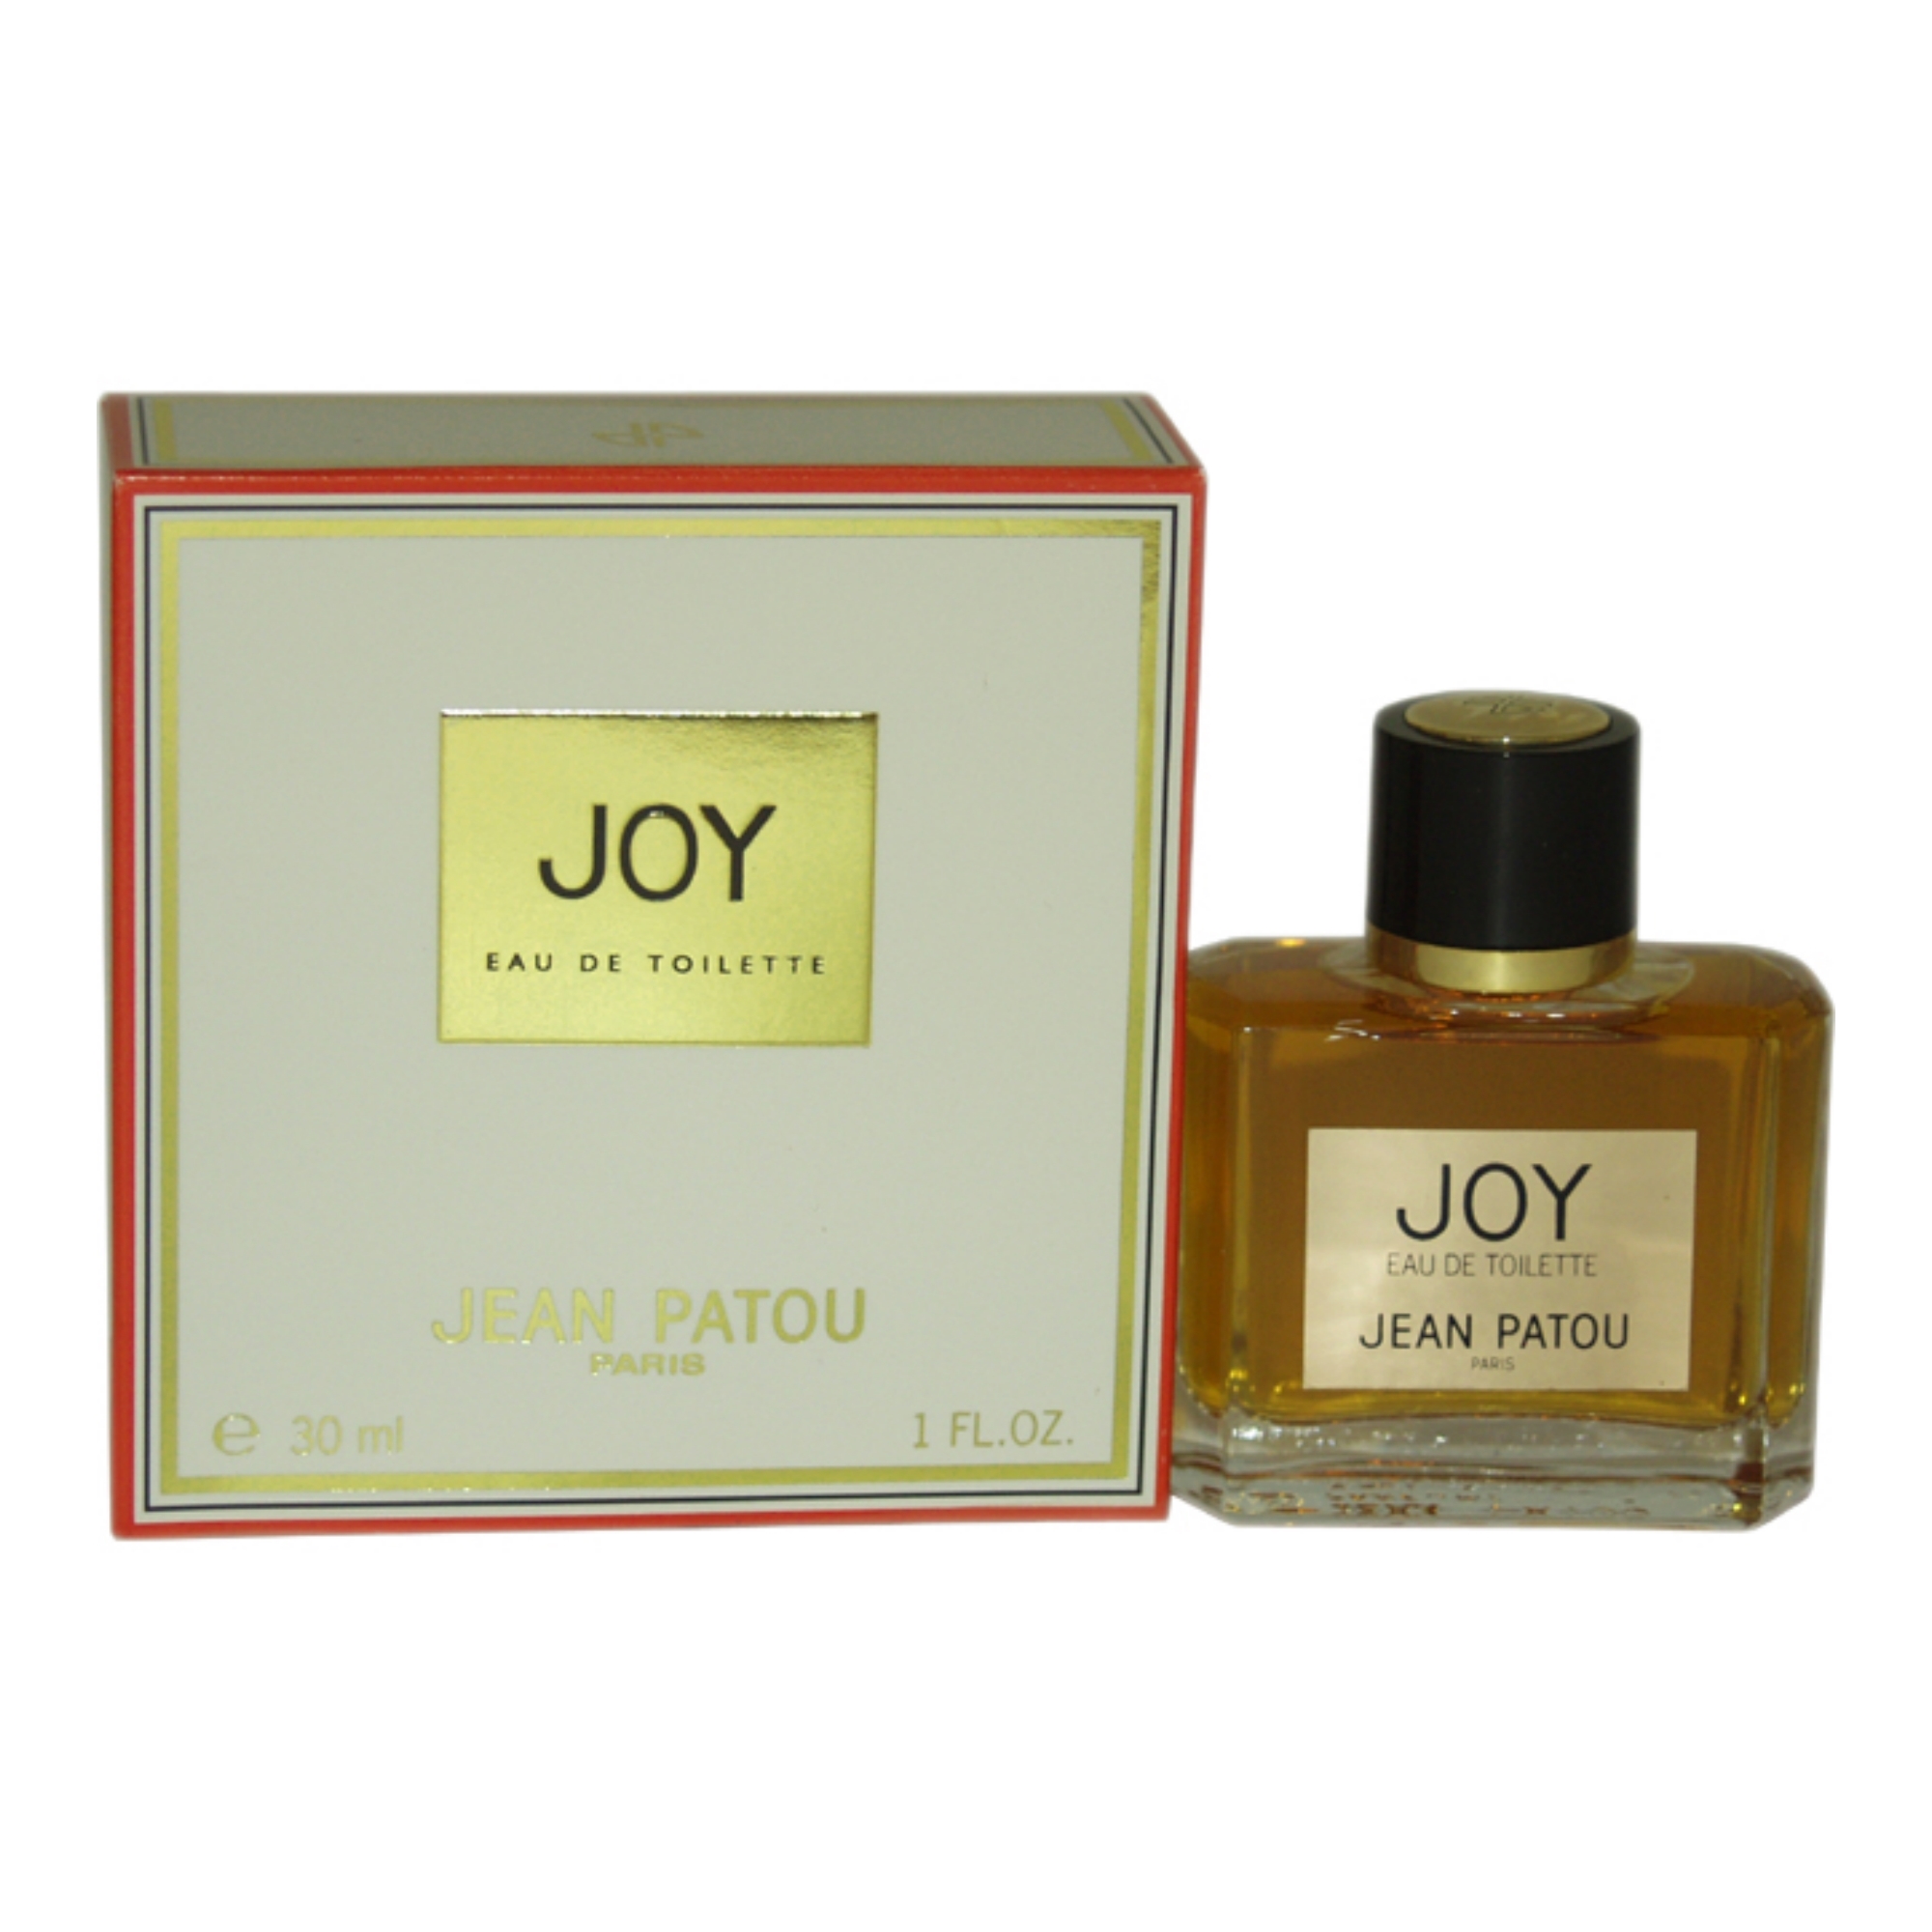 Joy by Jean Patou for Women - 1 oz EDT Spray